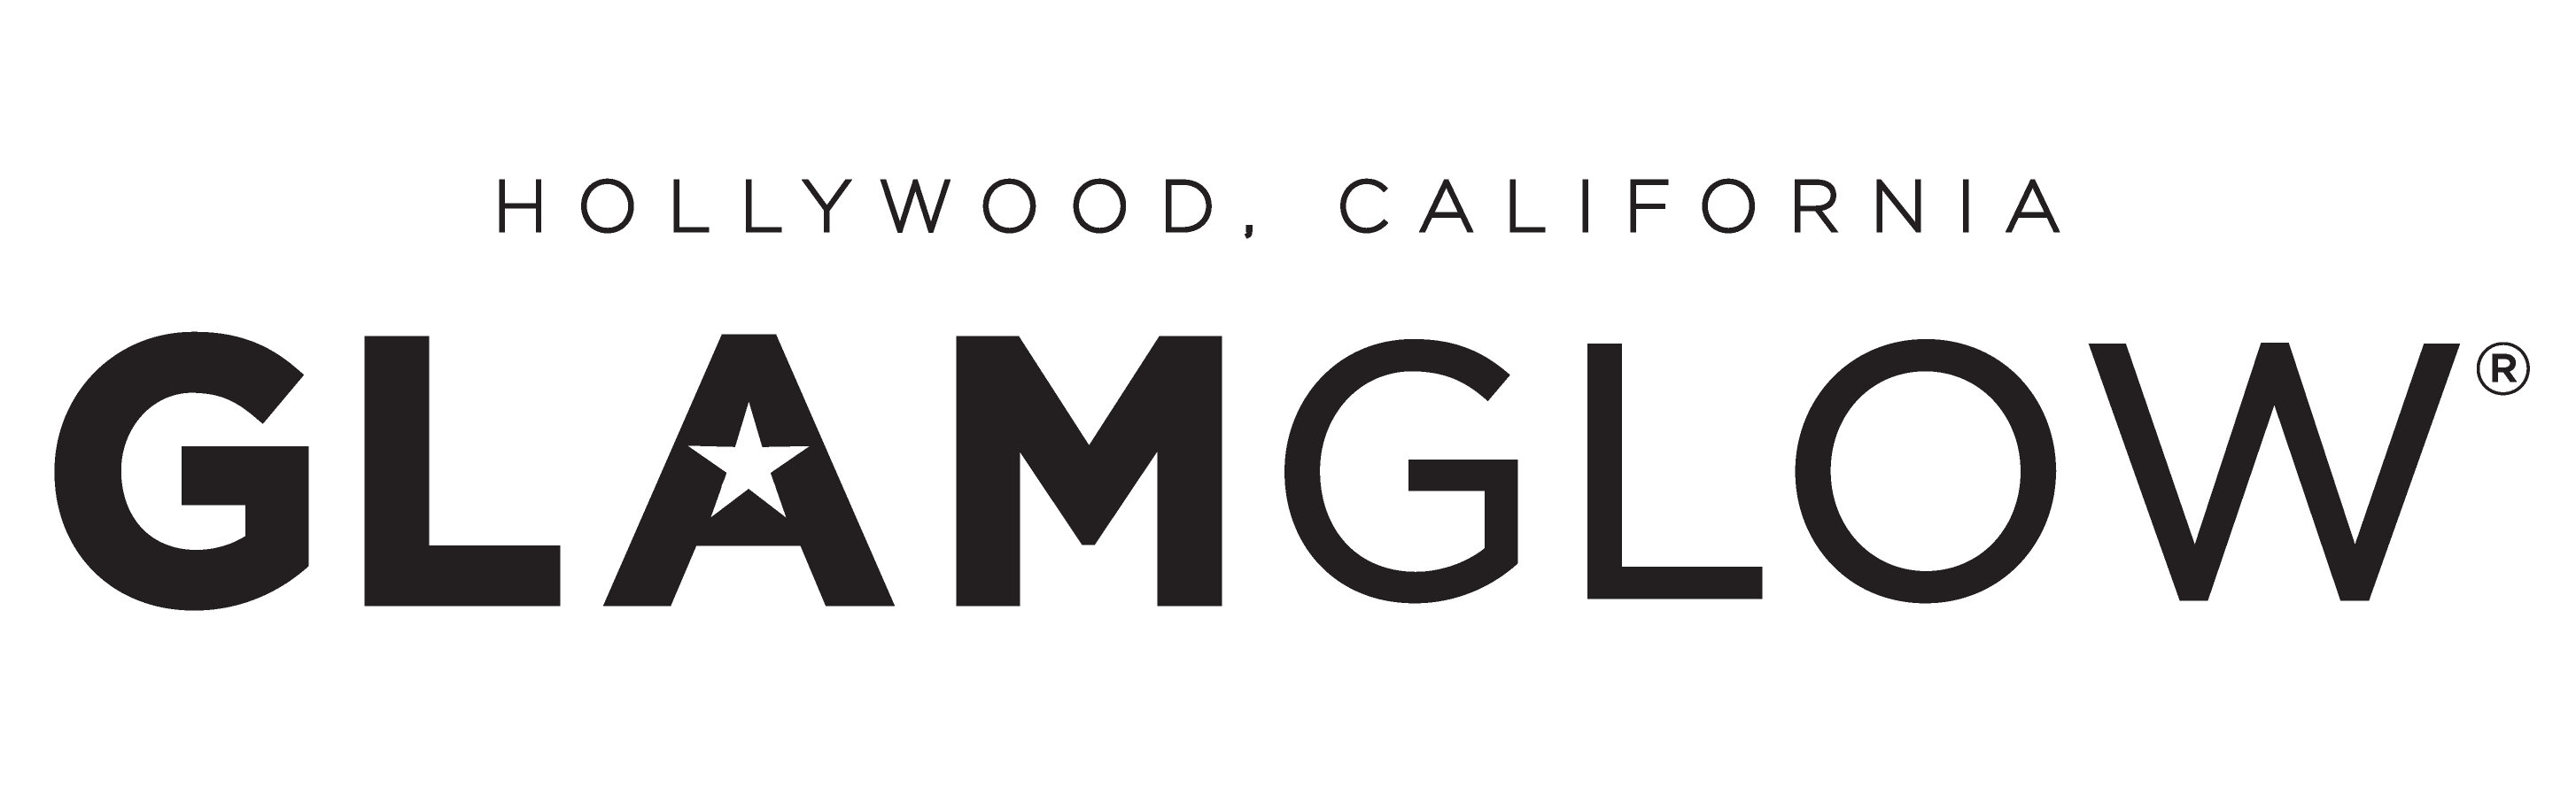 GLAMGLOW_logo